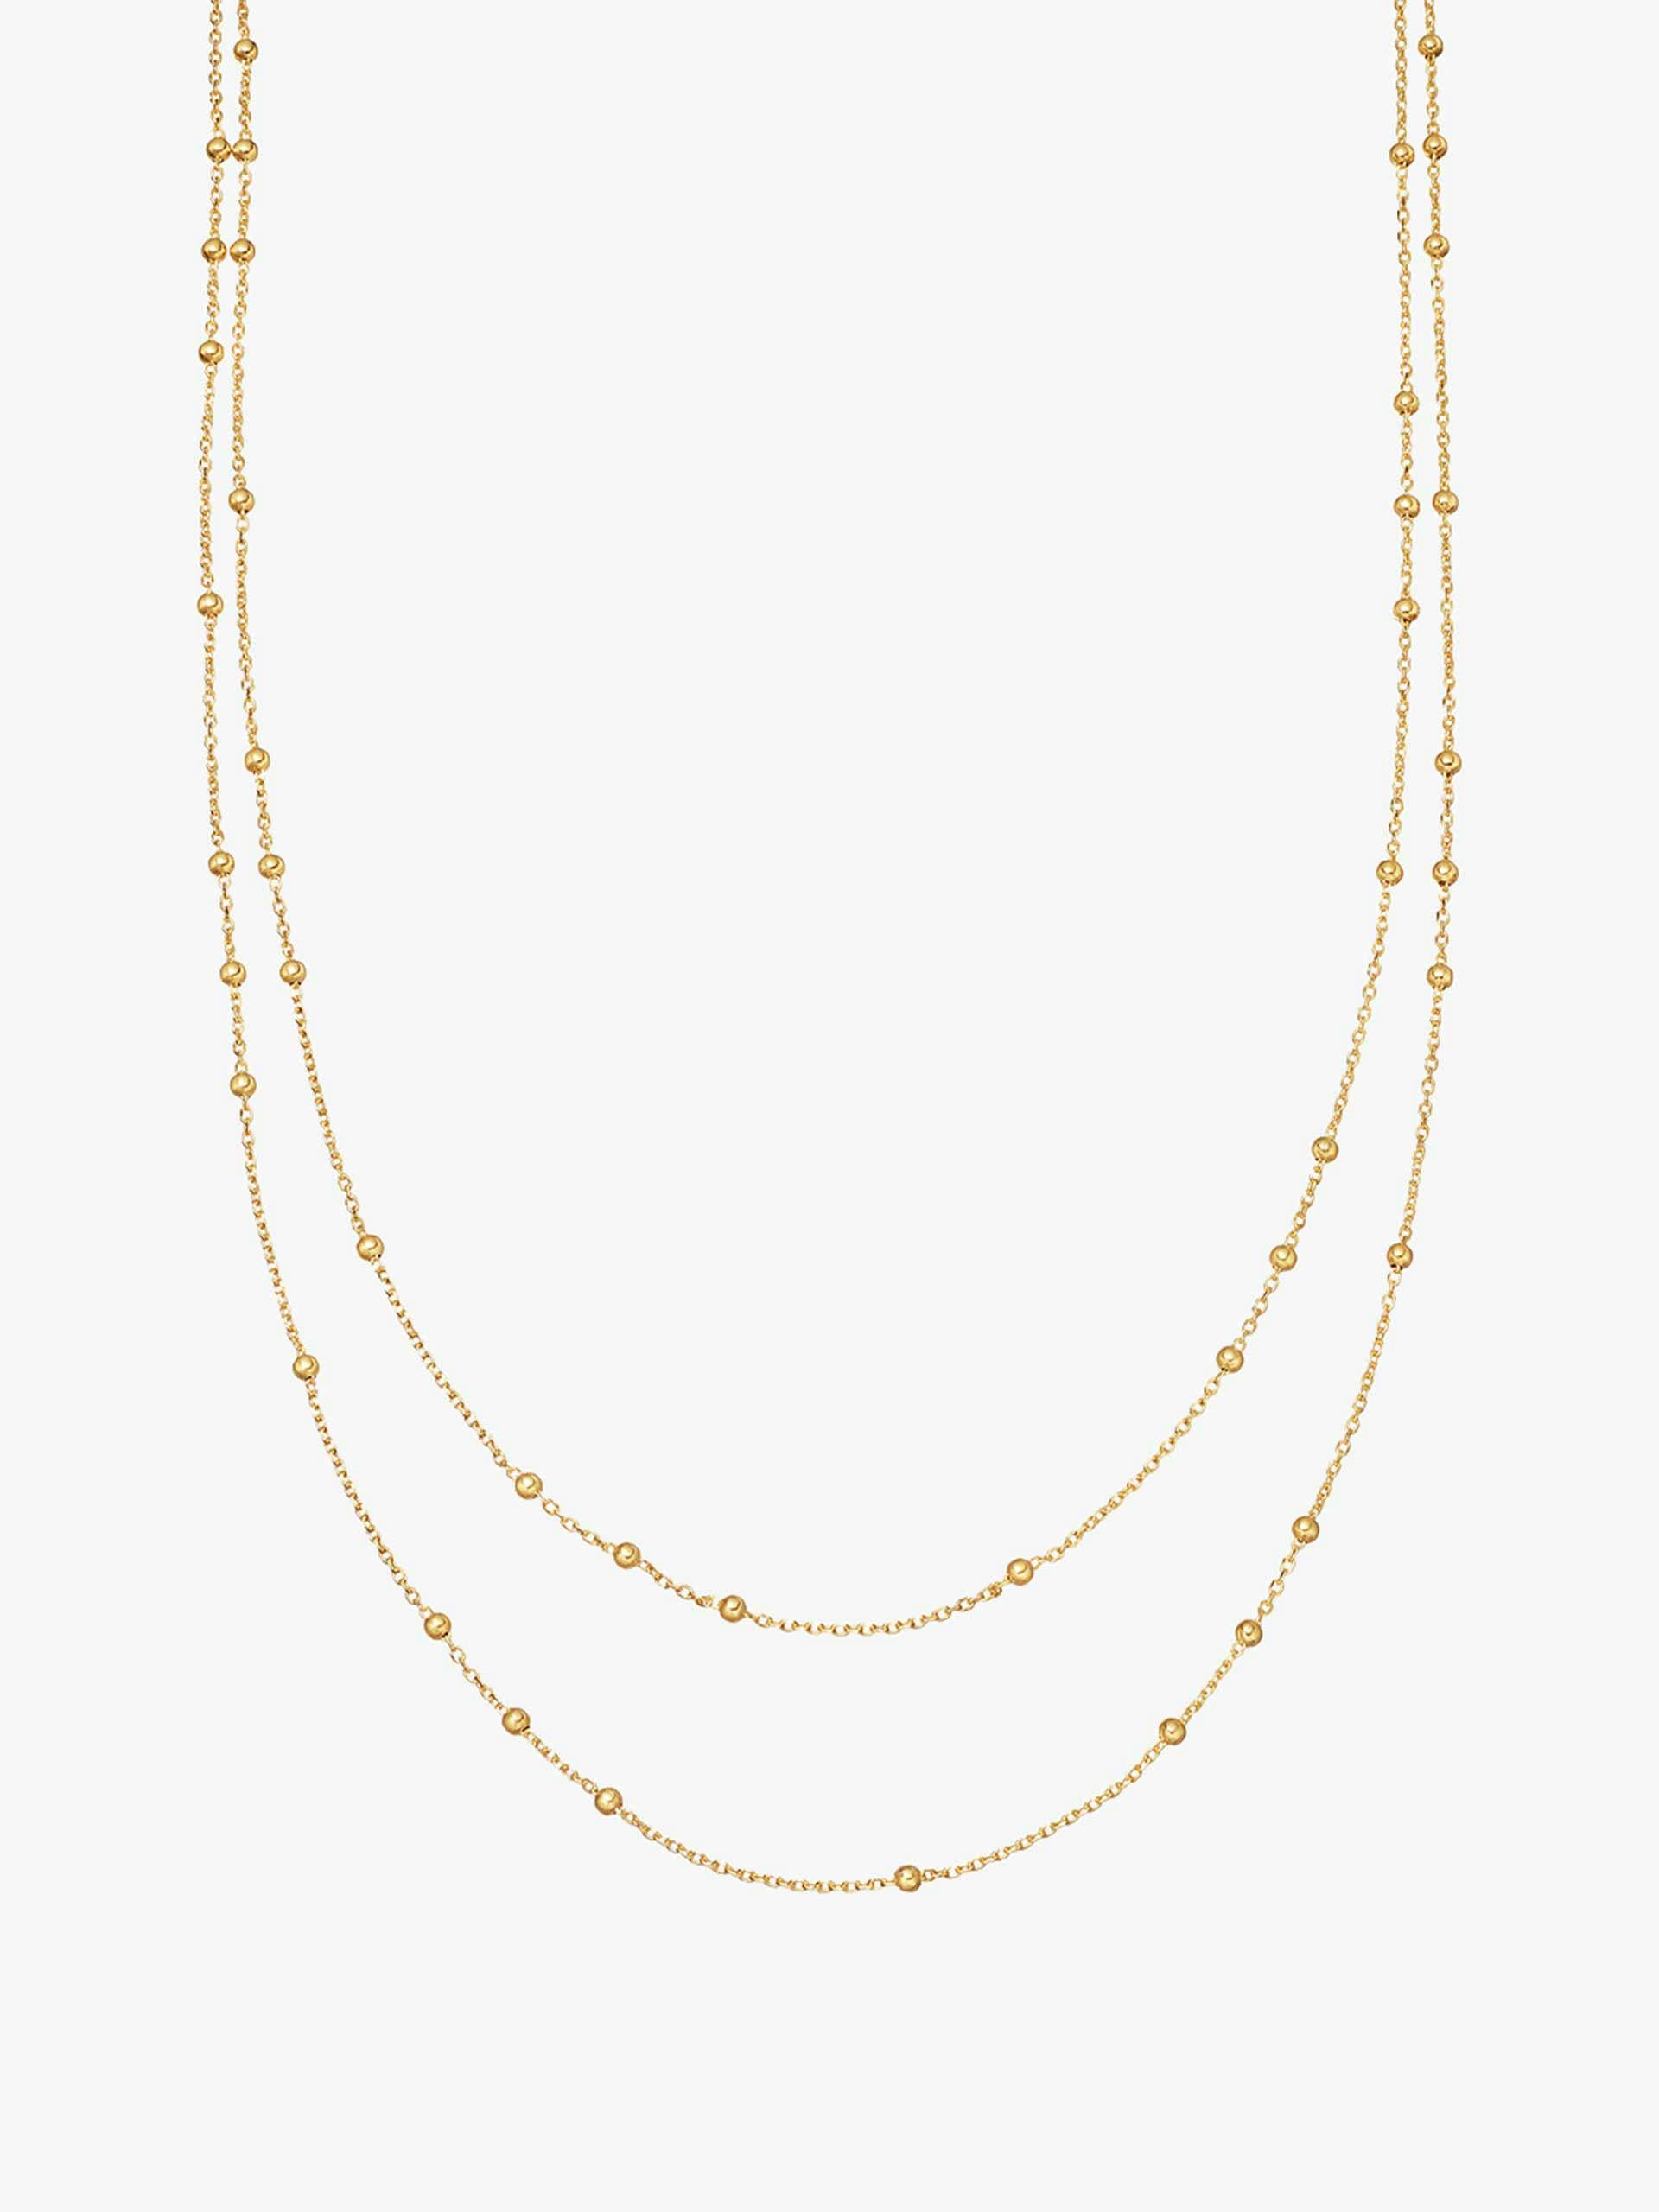 Double chain gold vermeil necklace